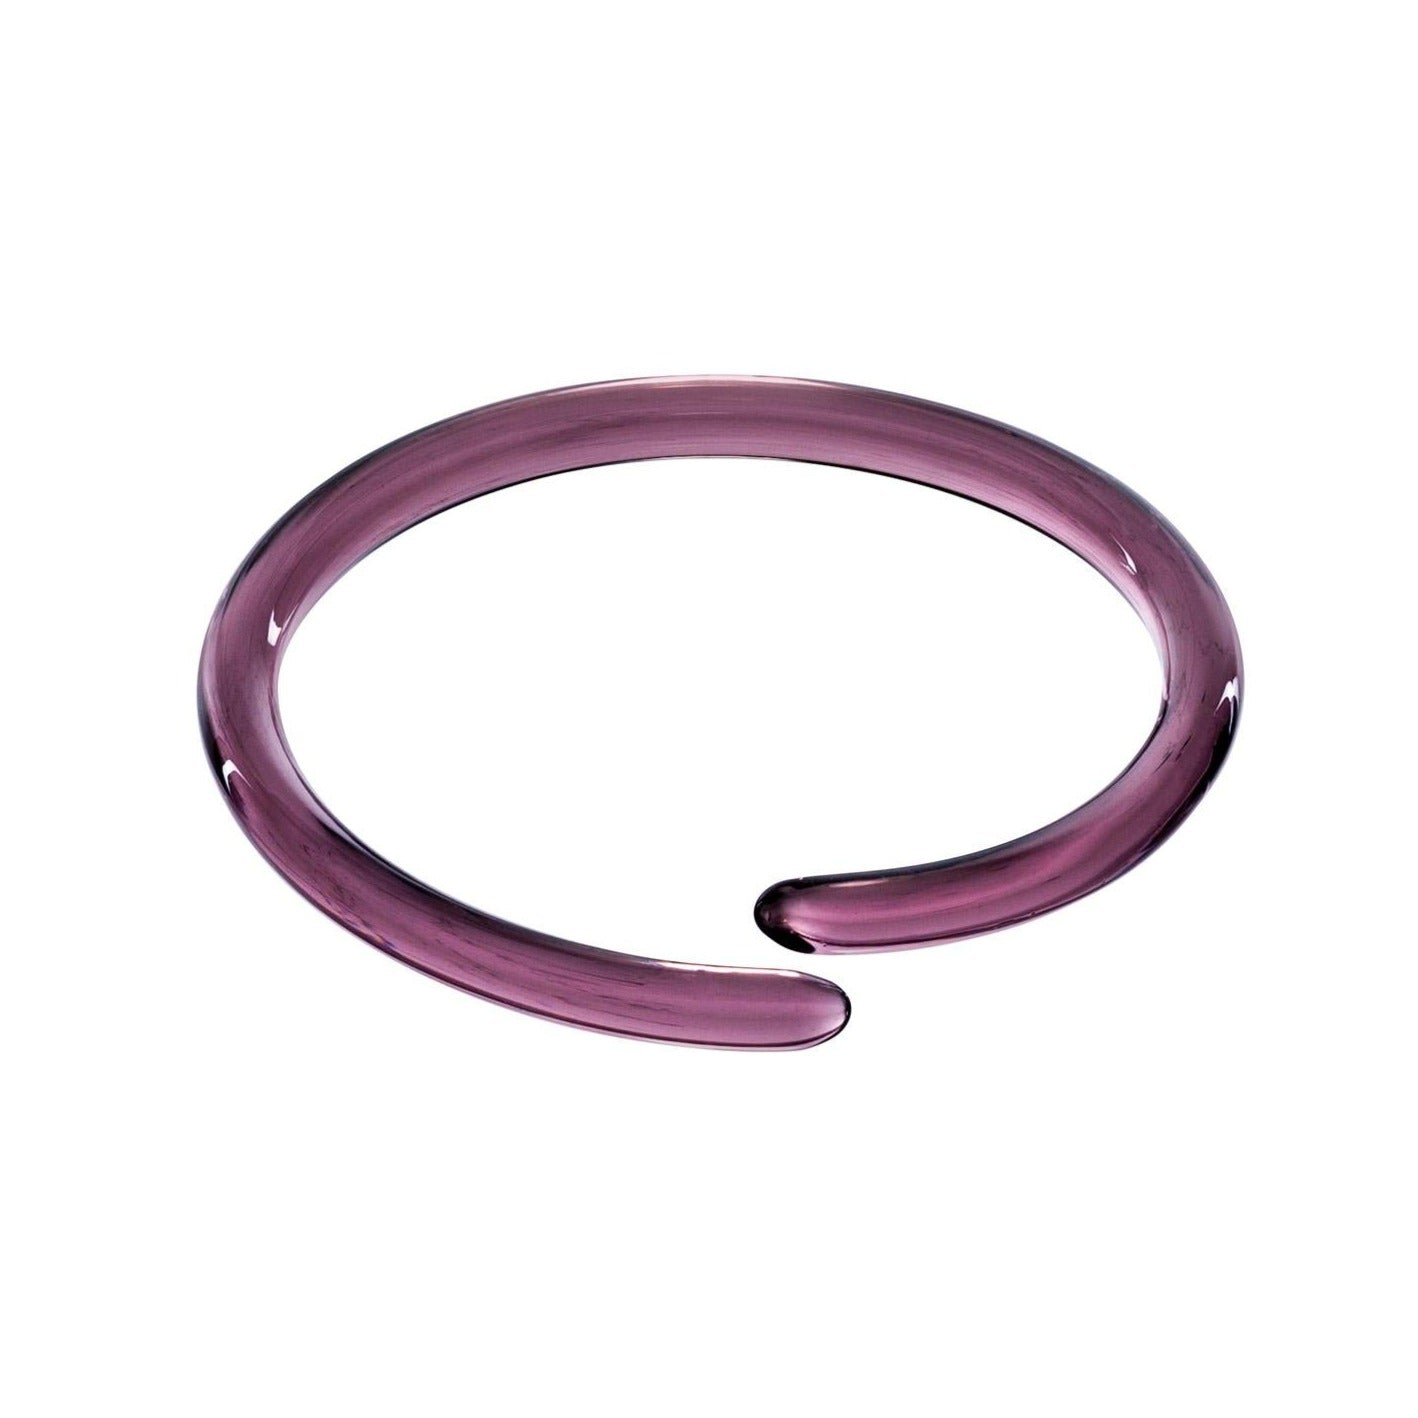 Coil, spiral shape bracelets